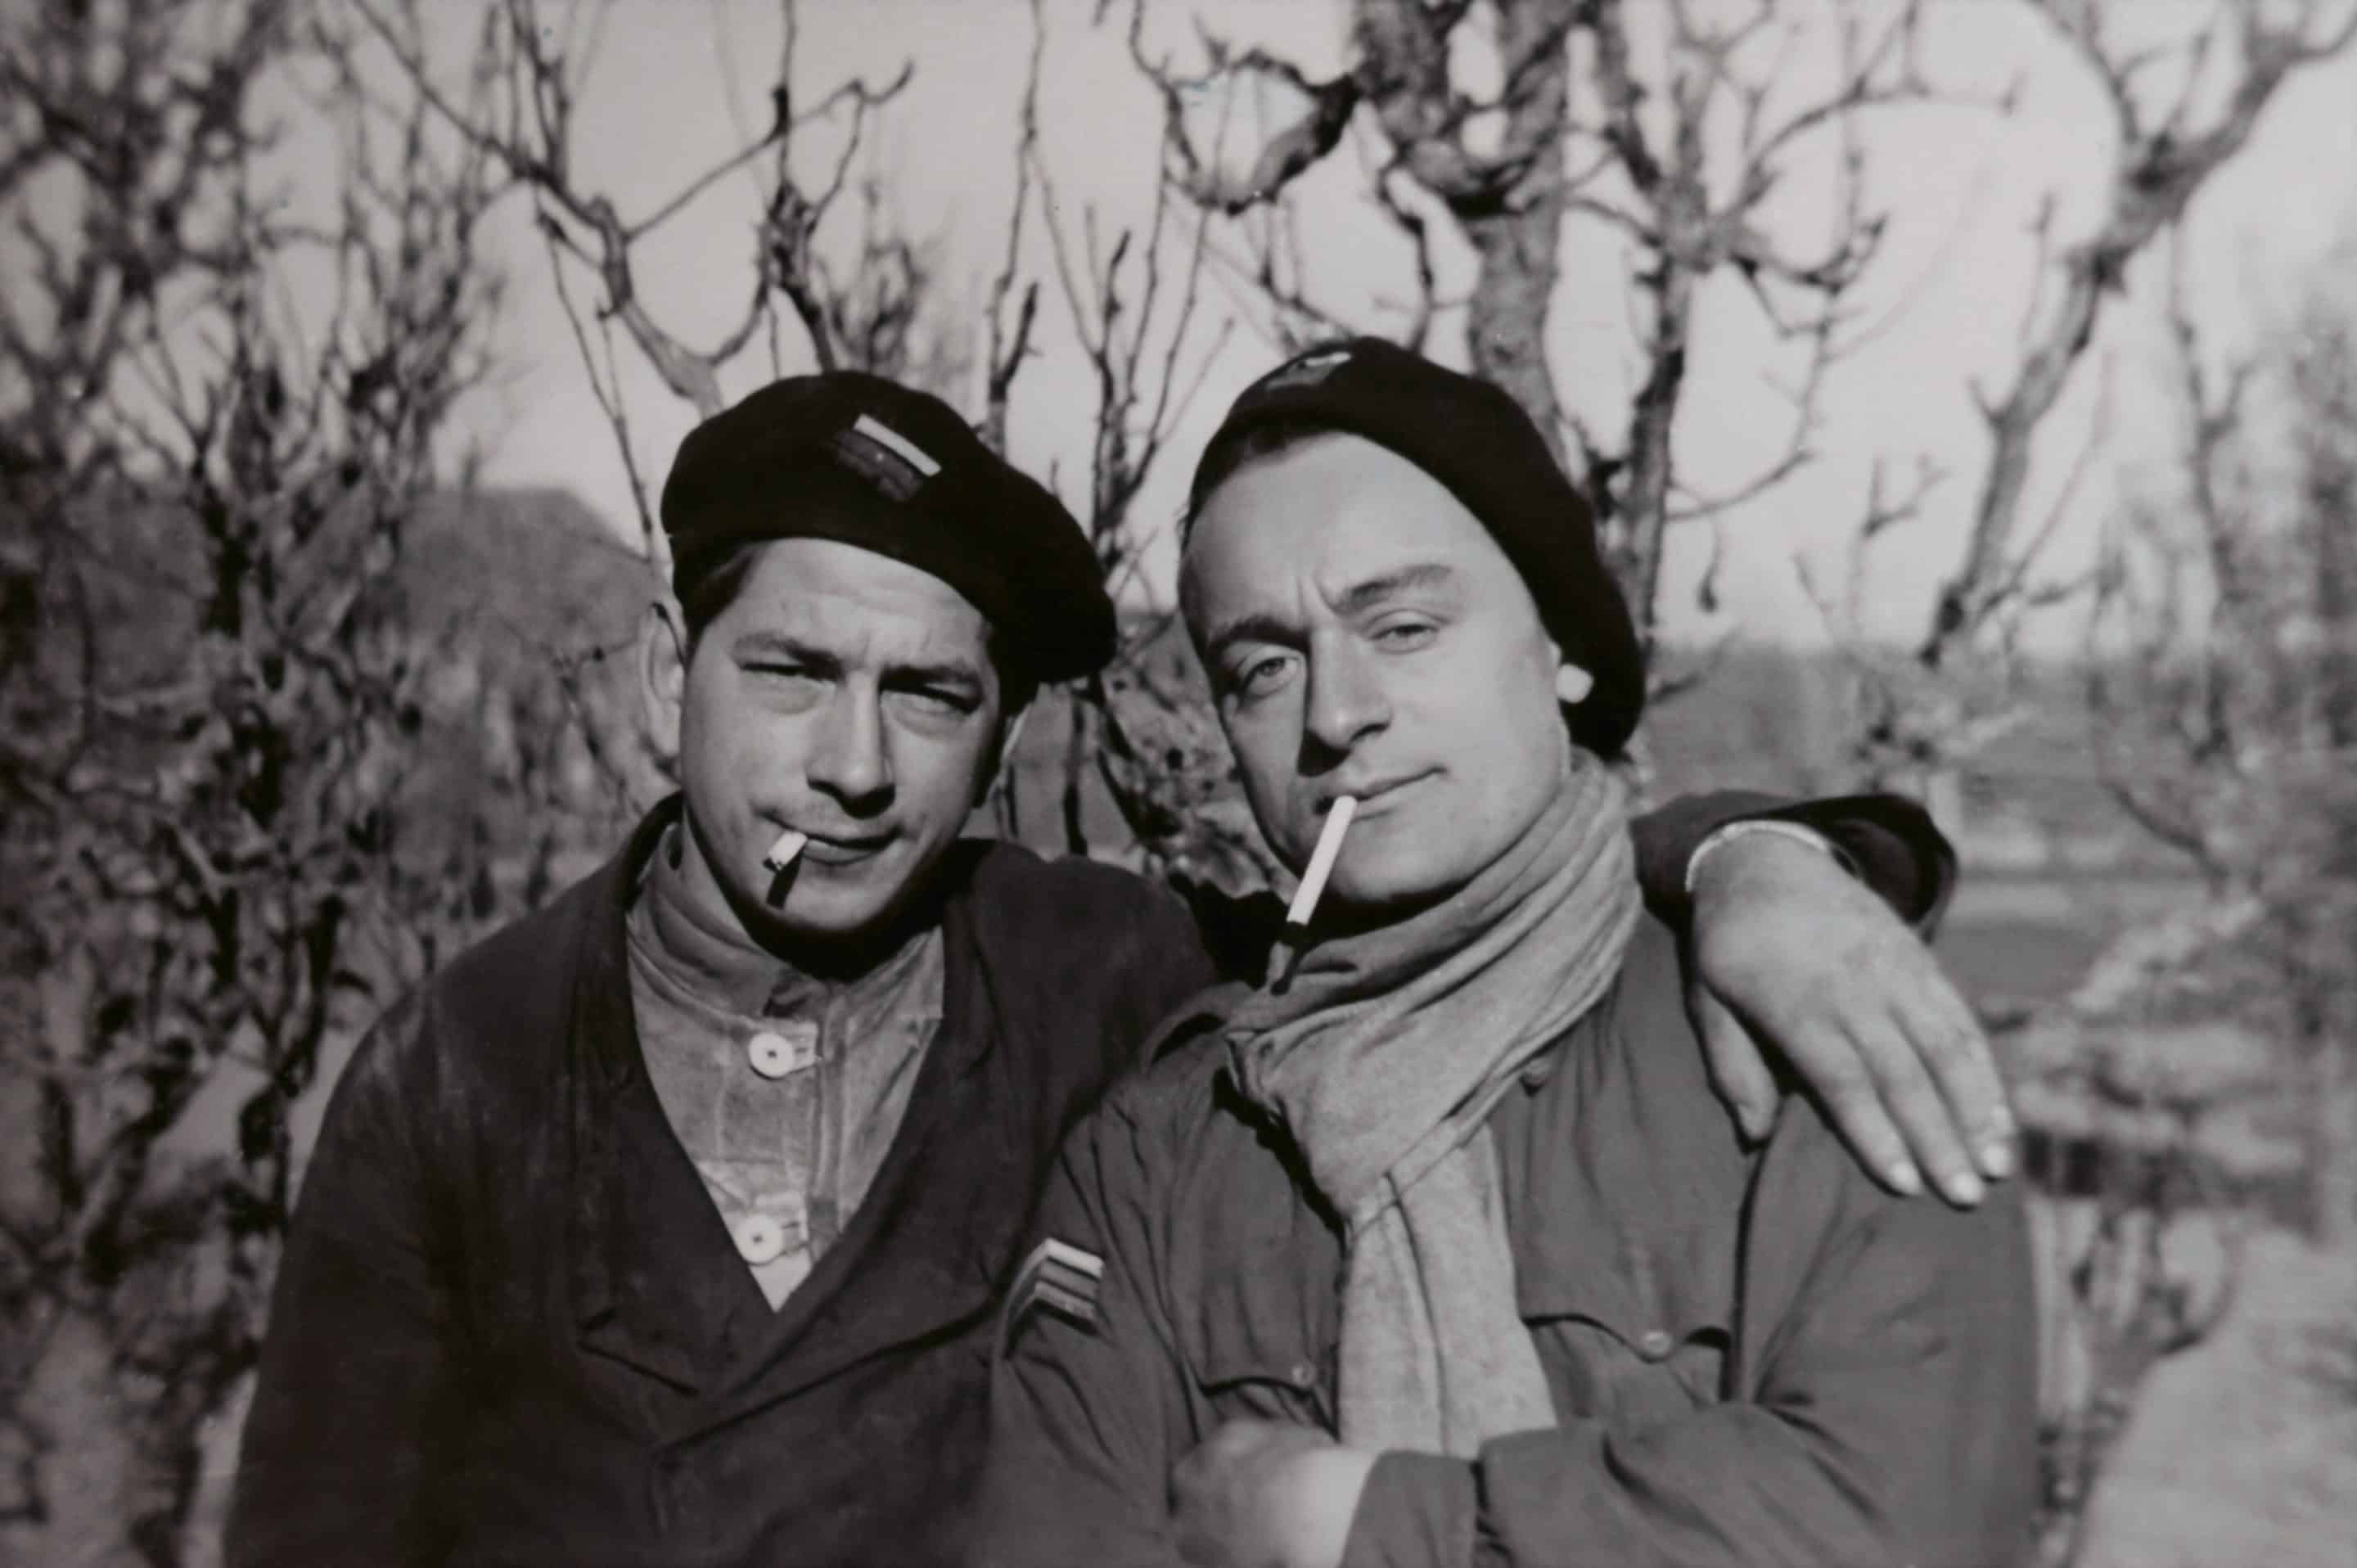 Numérisation et restauration d'une photographie de deux soldats de la Première armée française à l'hiver 44-45